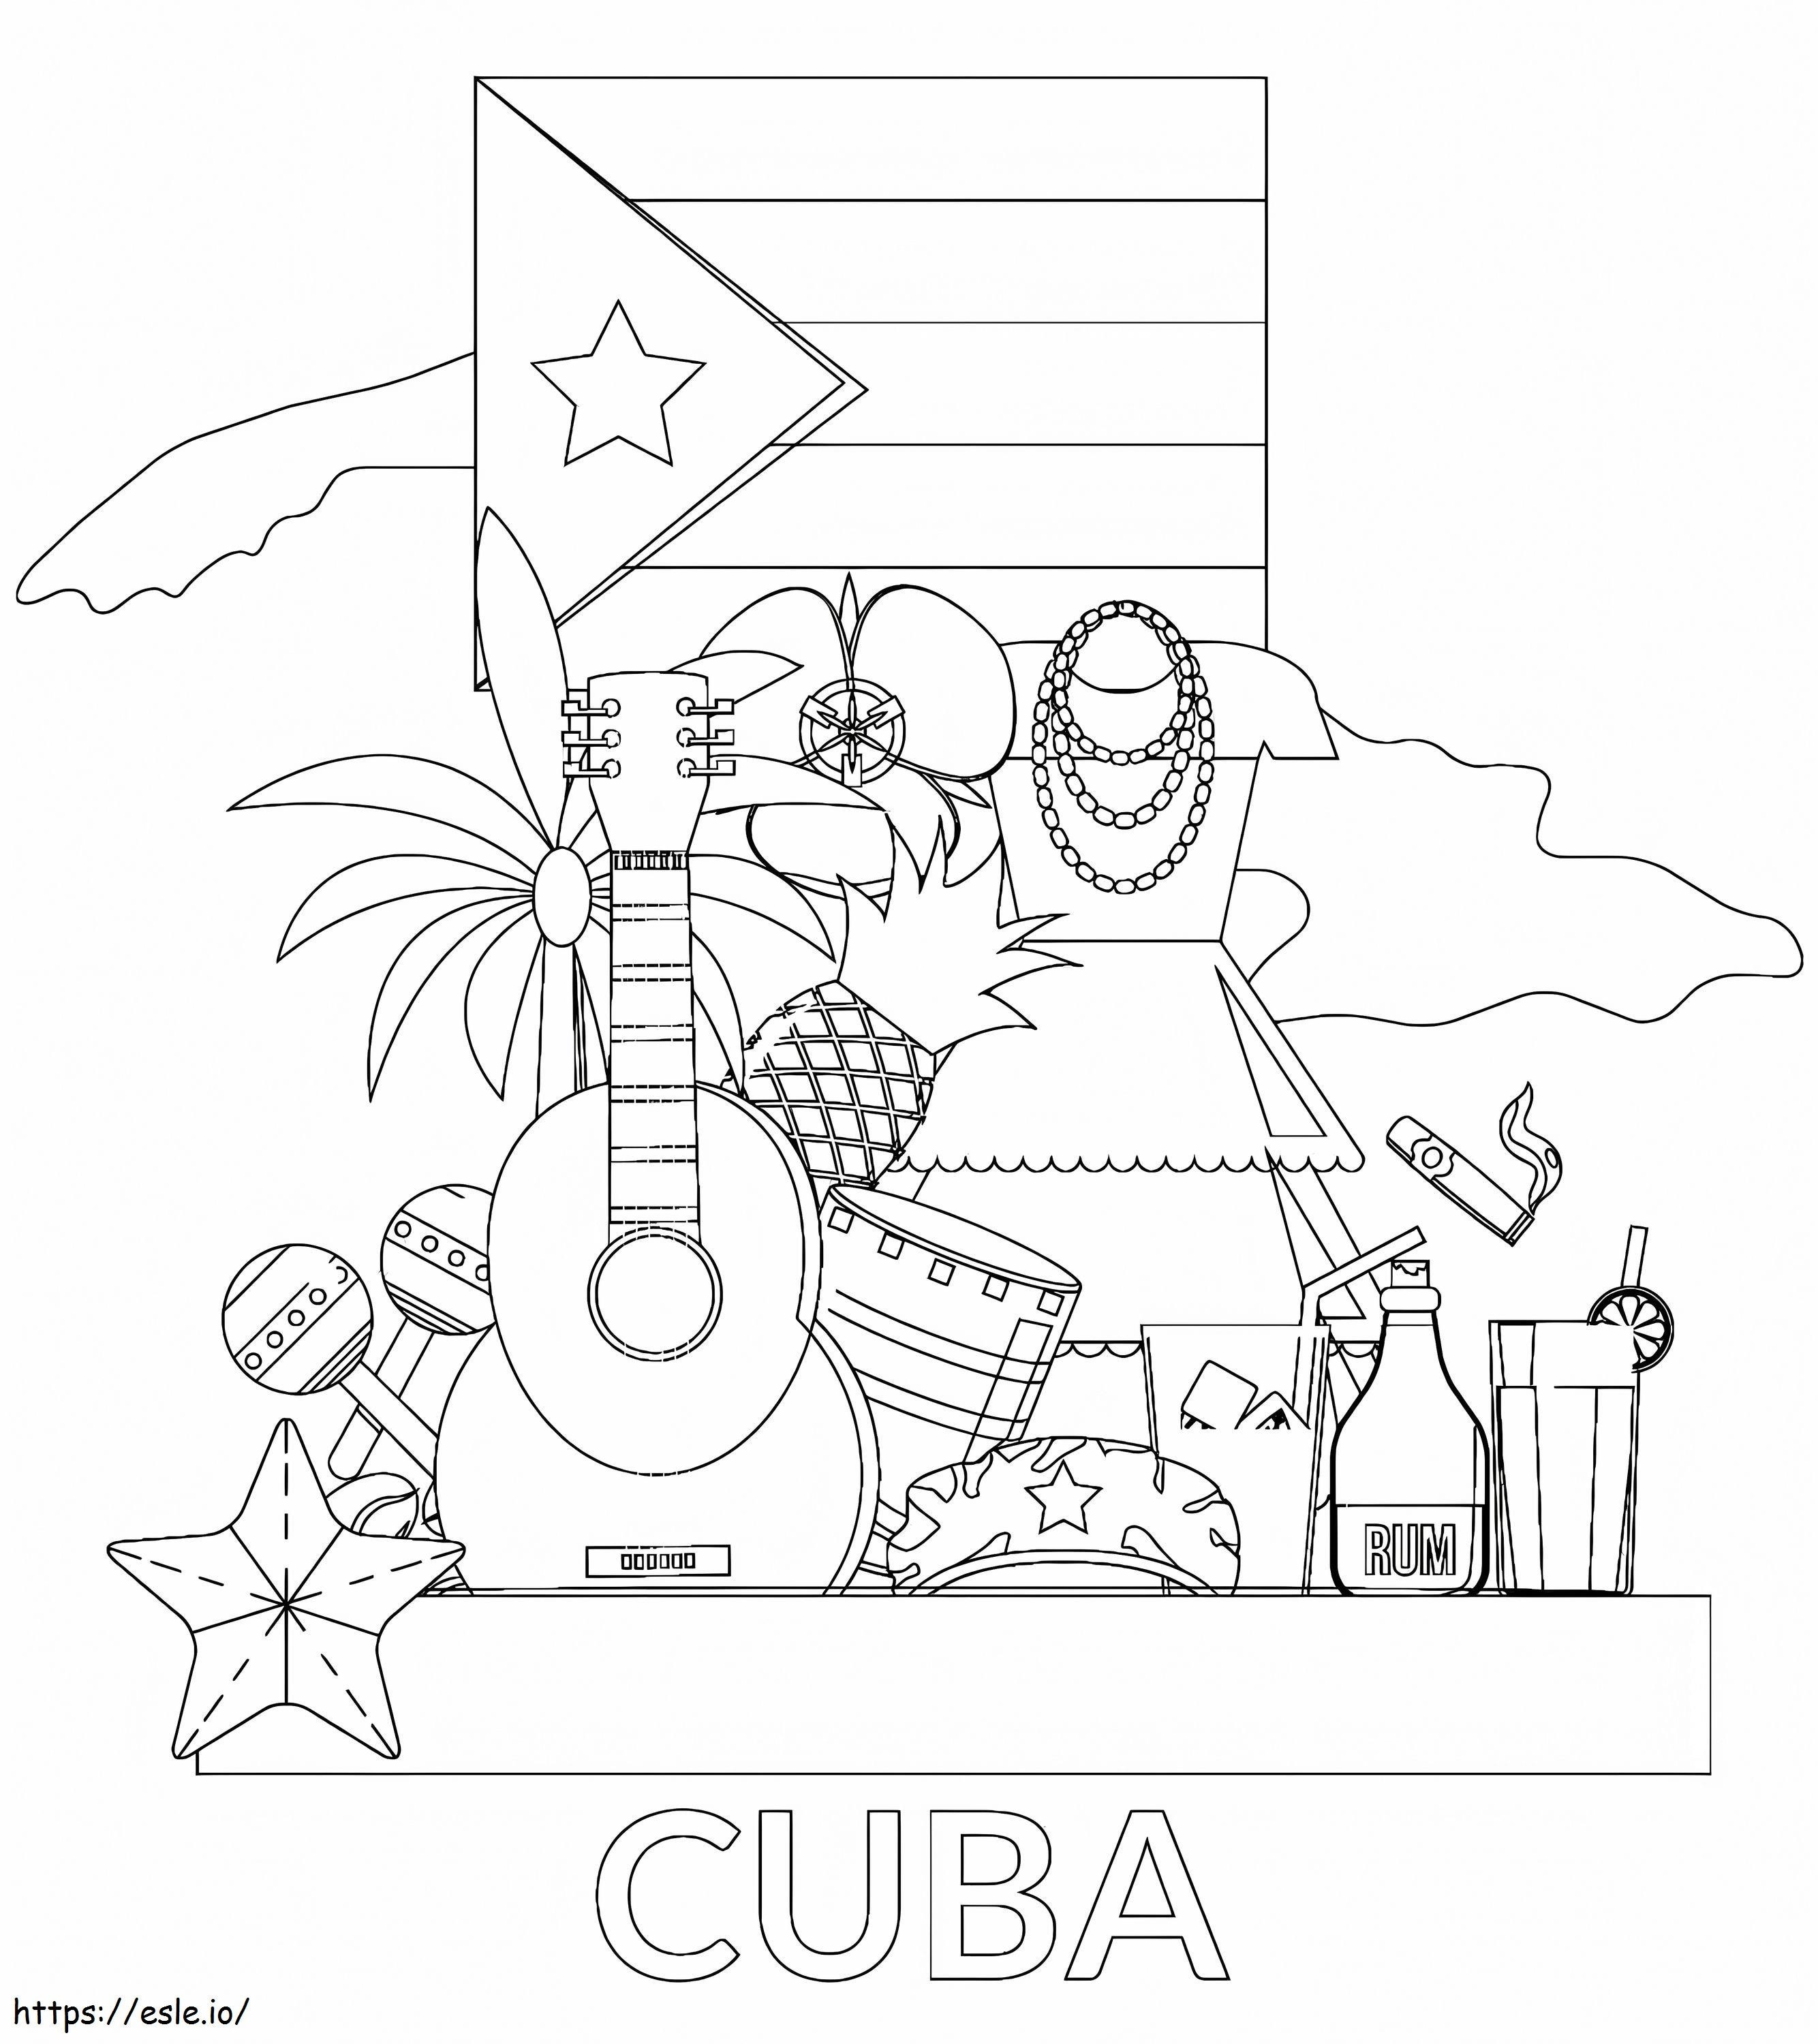 Cuba stampabile gratuitamente da colorare